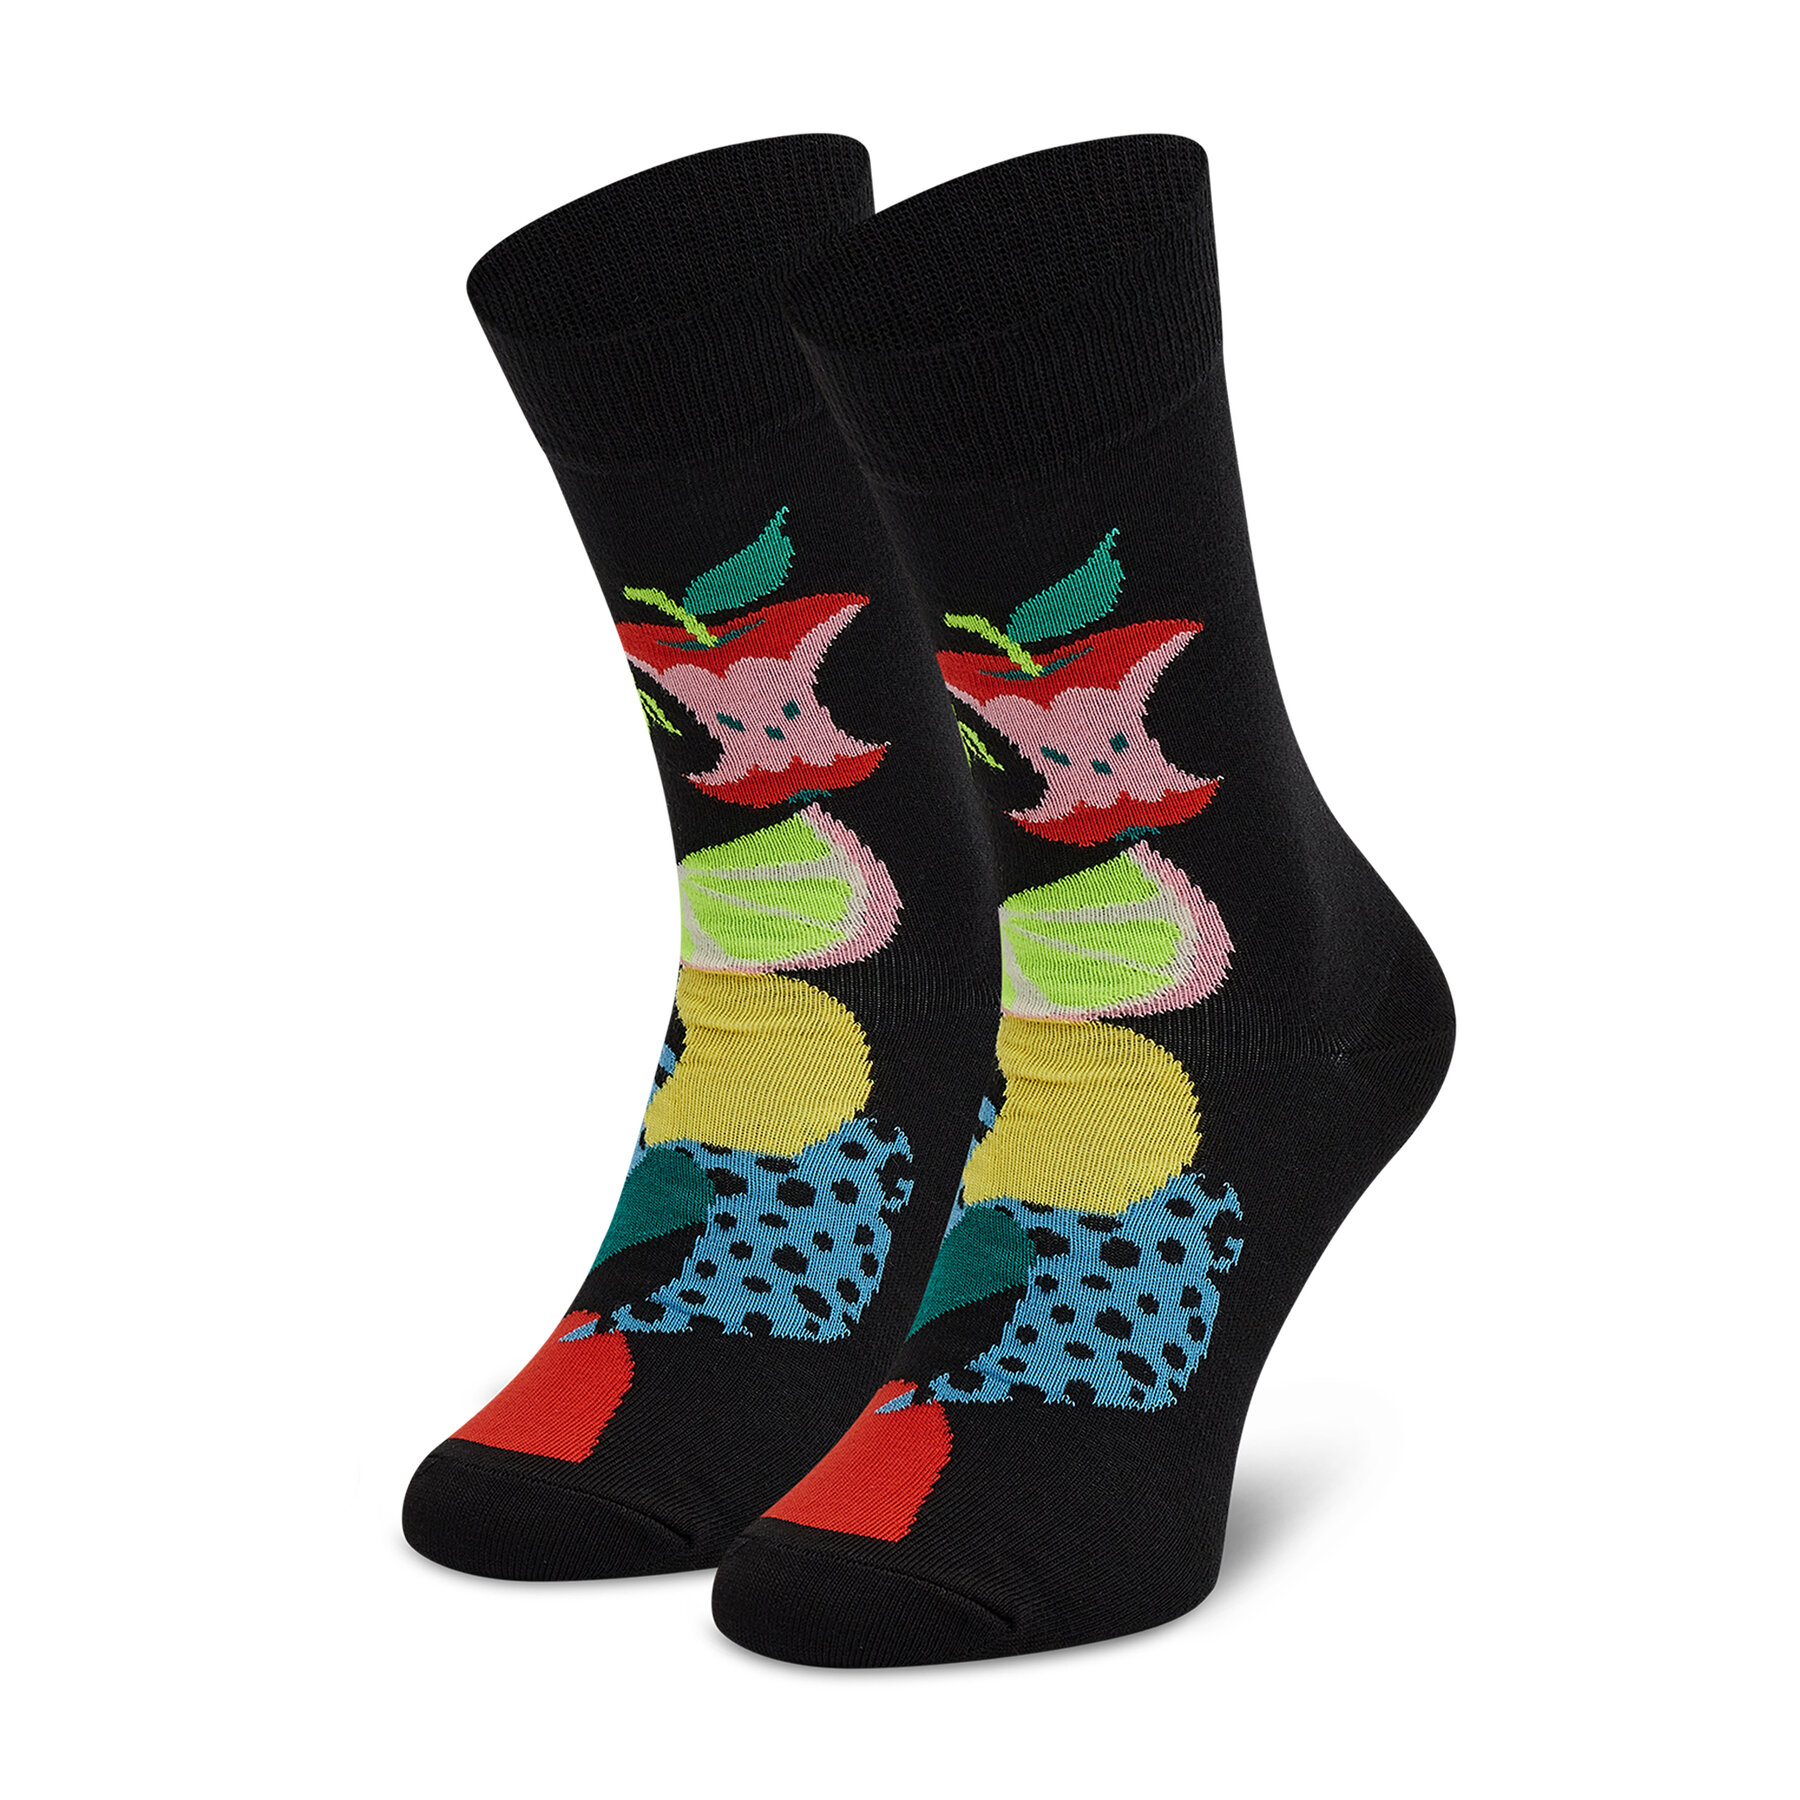 Chaussettes hautes unisex Happy Socks FRU01-9300 Noir